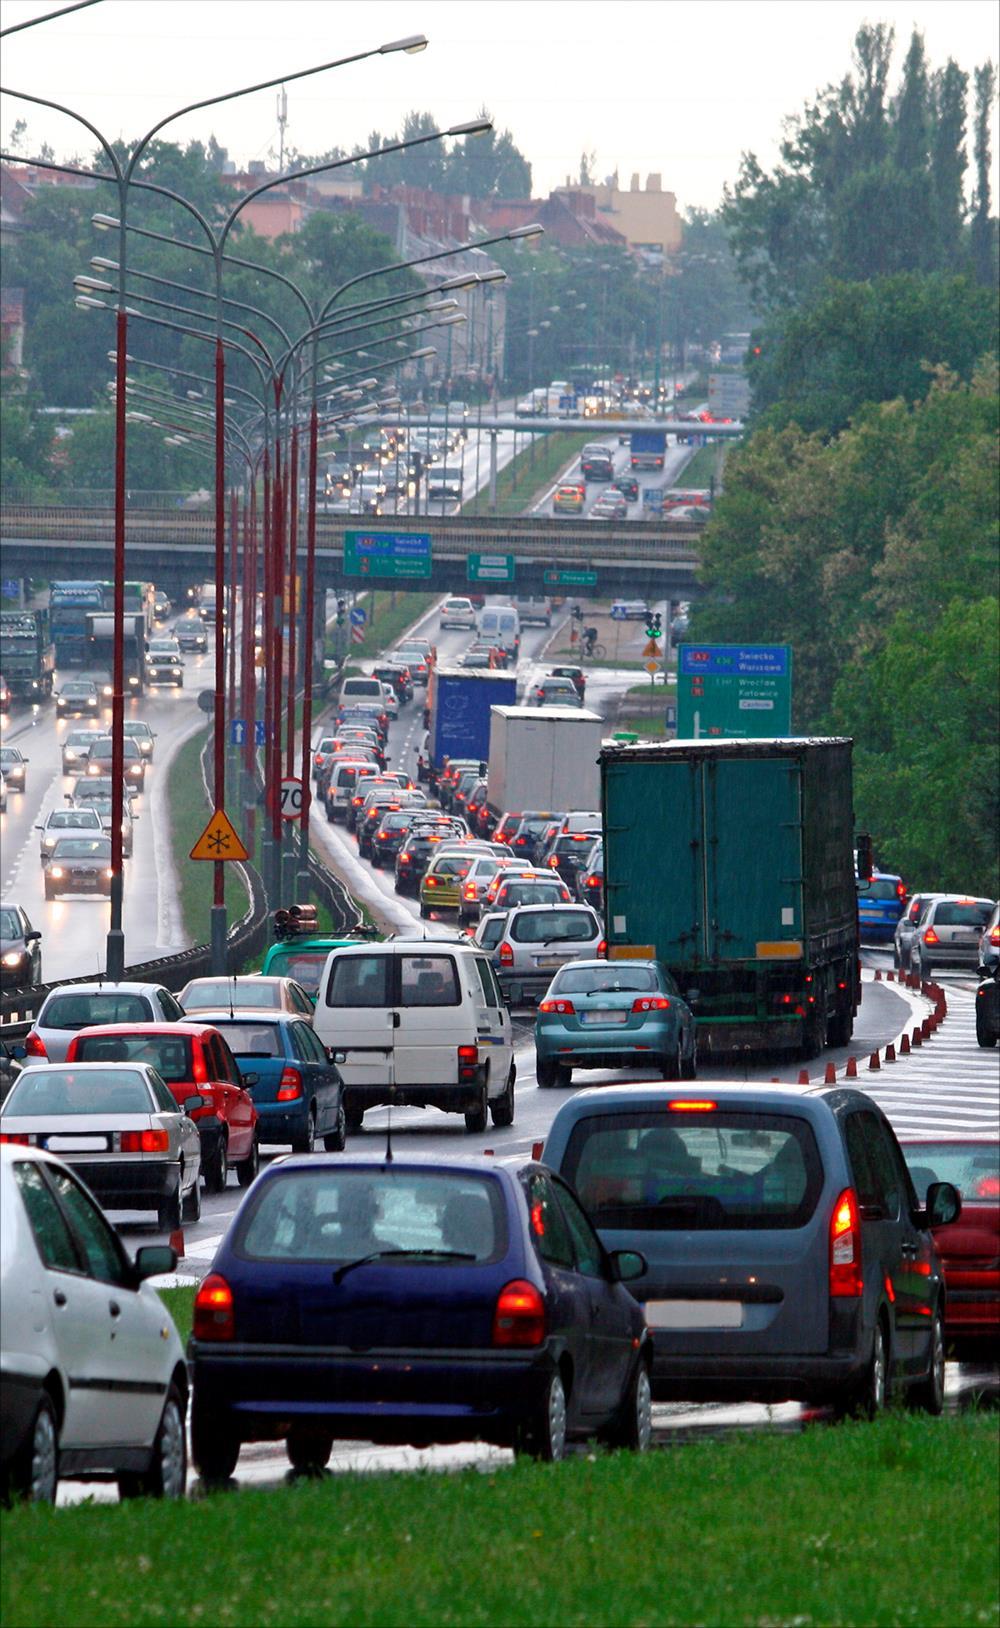 Hałas drogowy Rosnący problem w Polsce Hałas drogowy to poważny problem w Polsce. Według danych GUS w 2012 r. dogoniliśmy Unię Europejską pod względem liczby samochodów na 1 000 mieszkańców. W 2012 r.